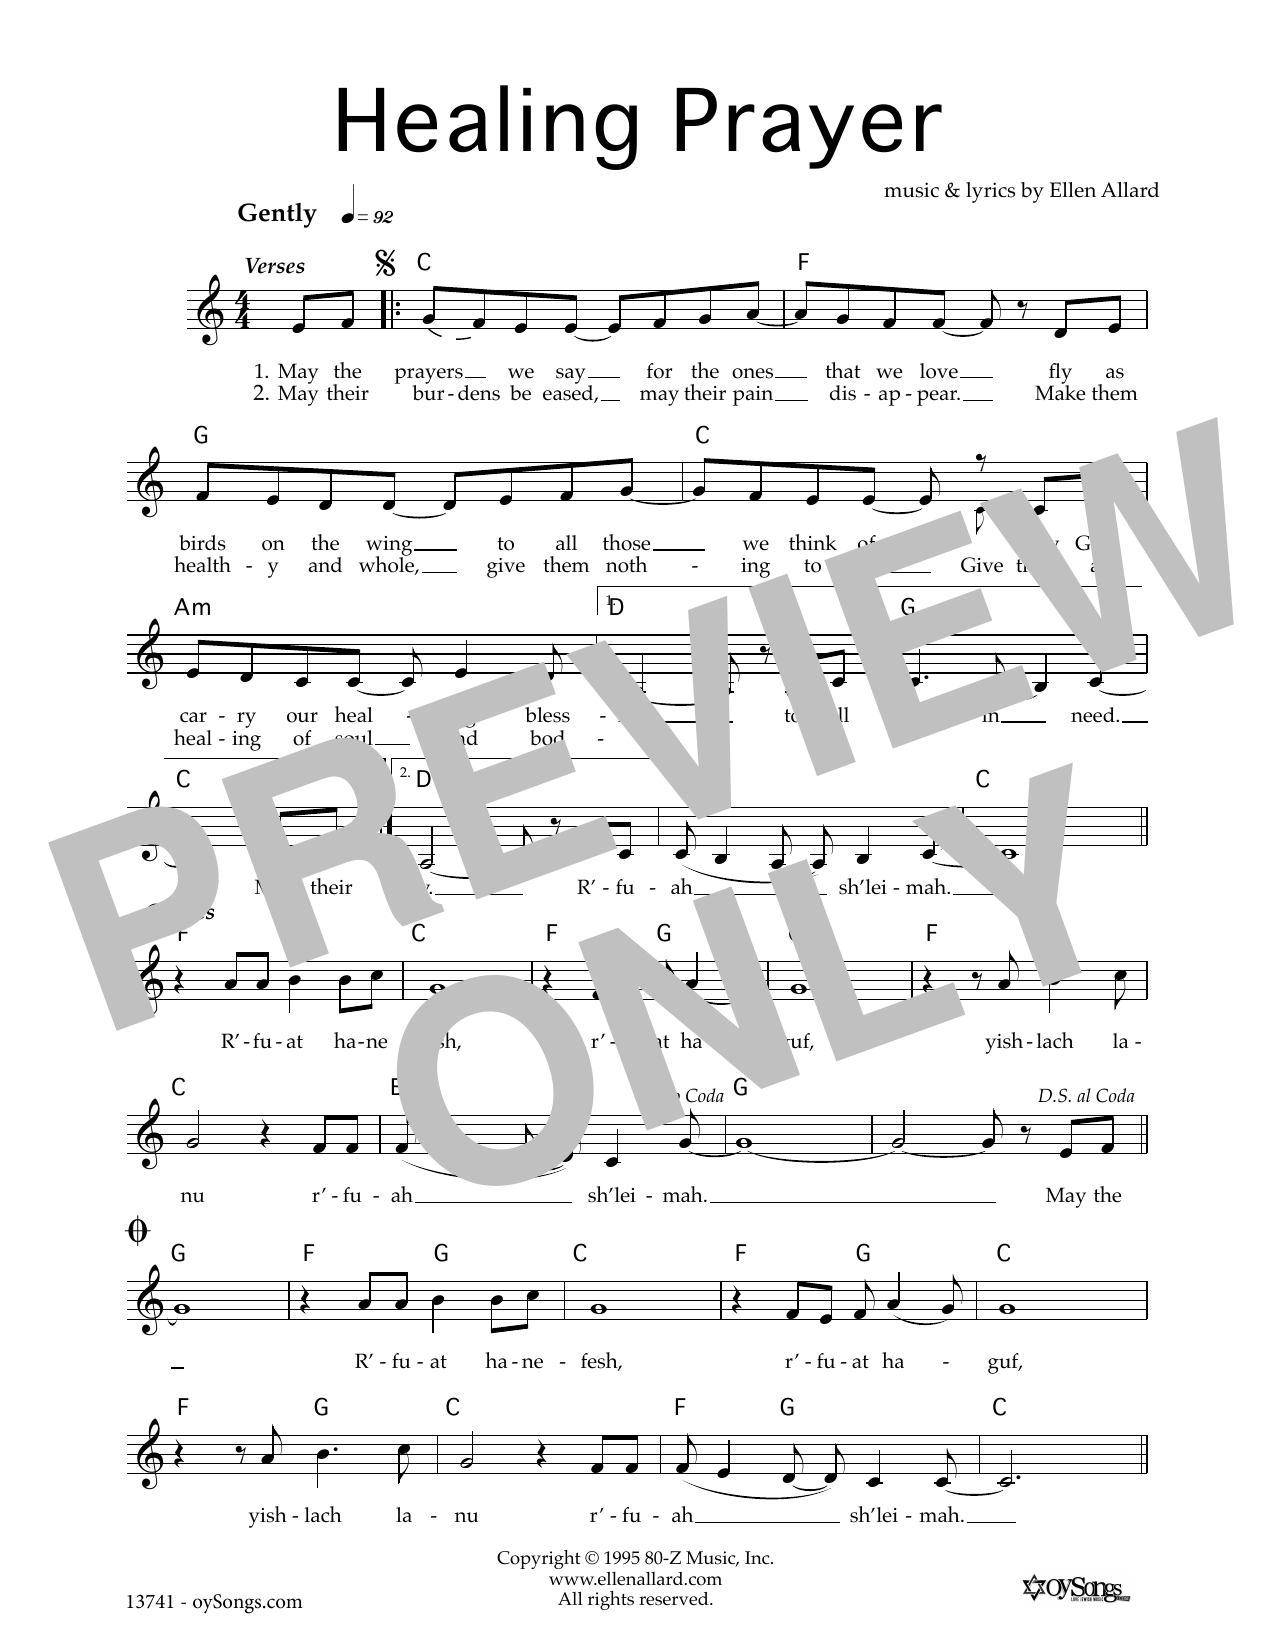 Ellen Allard Healing Prayer sheet music notes and chords arranged for Lead Sheet / Fake Book